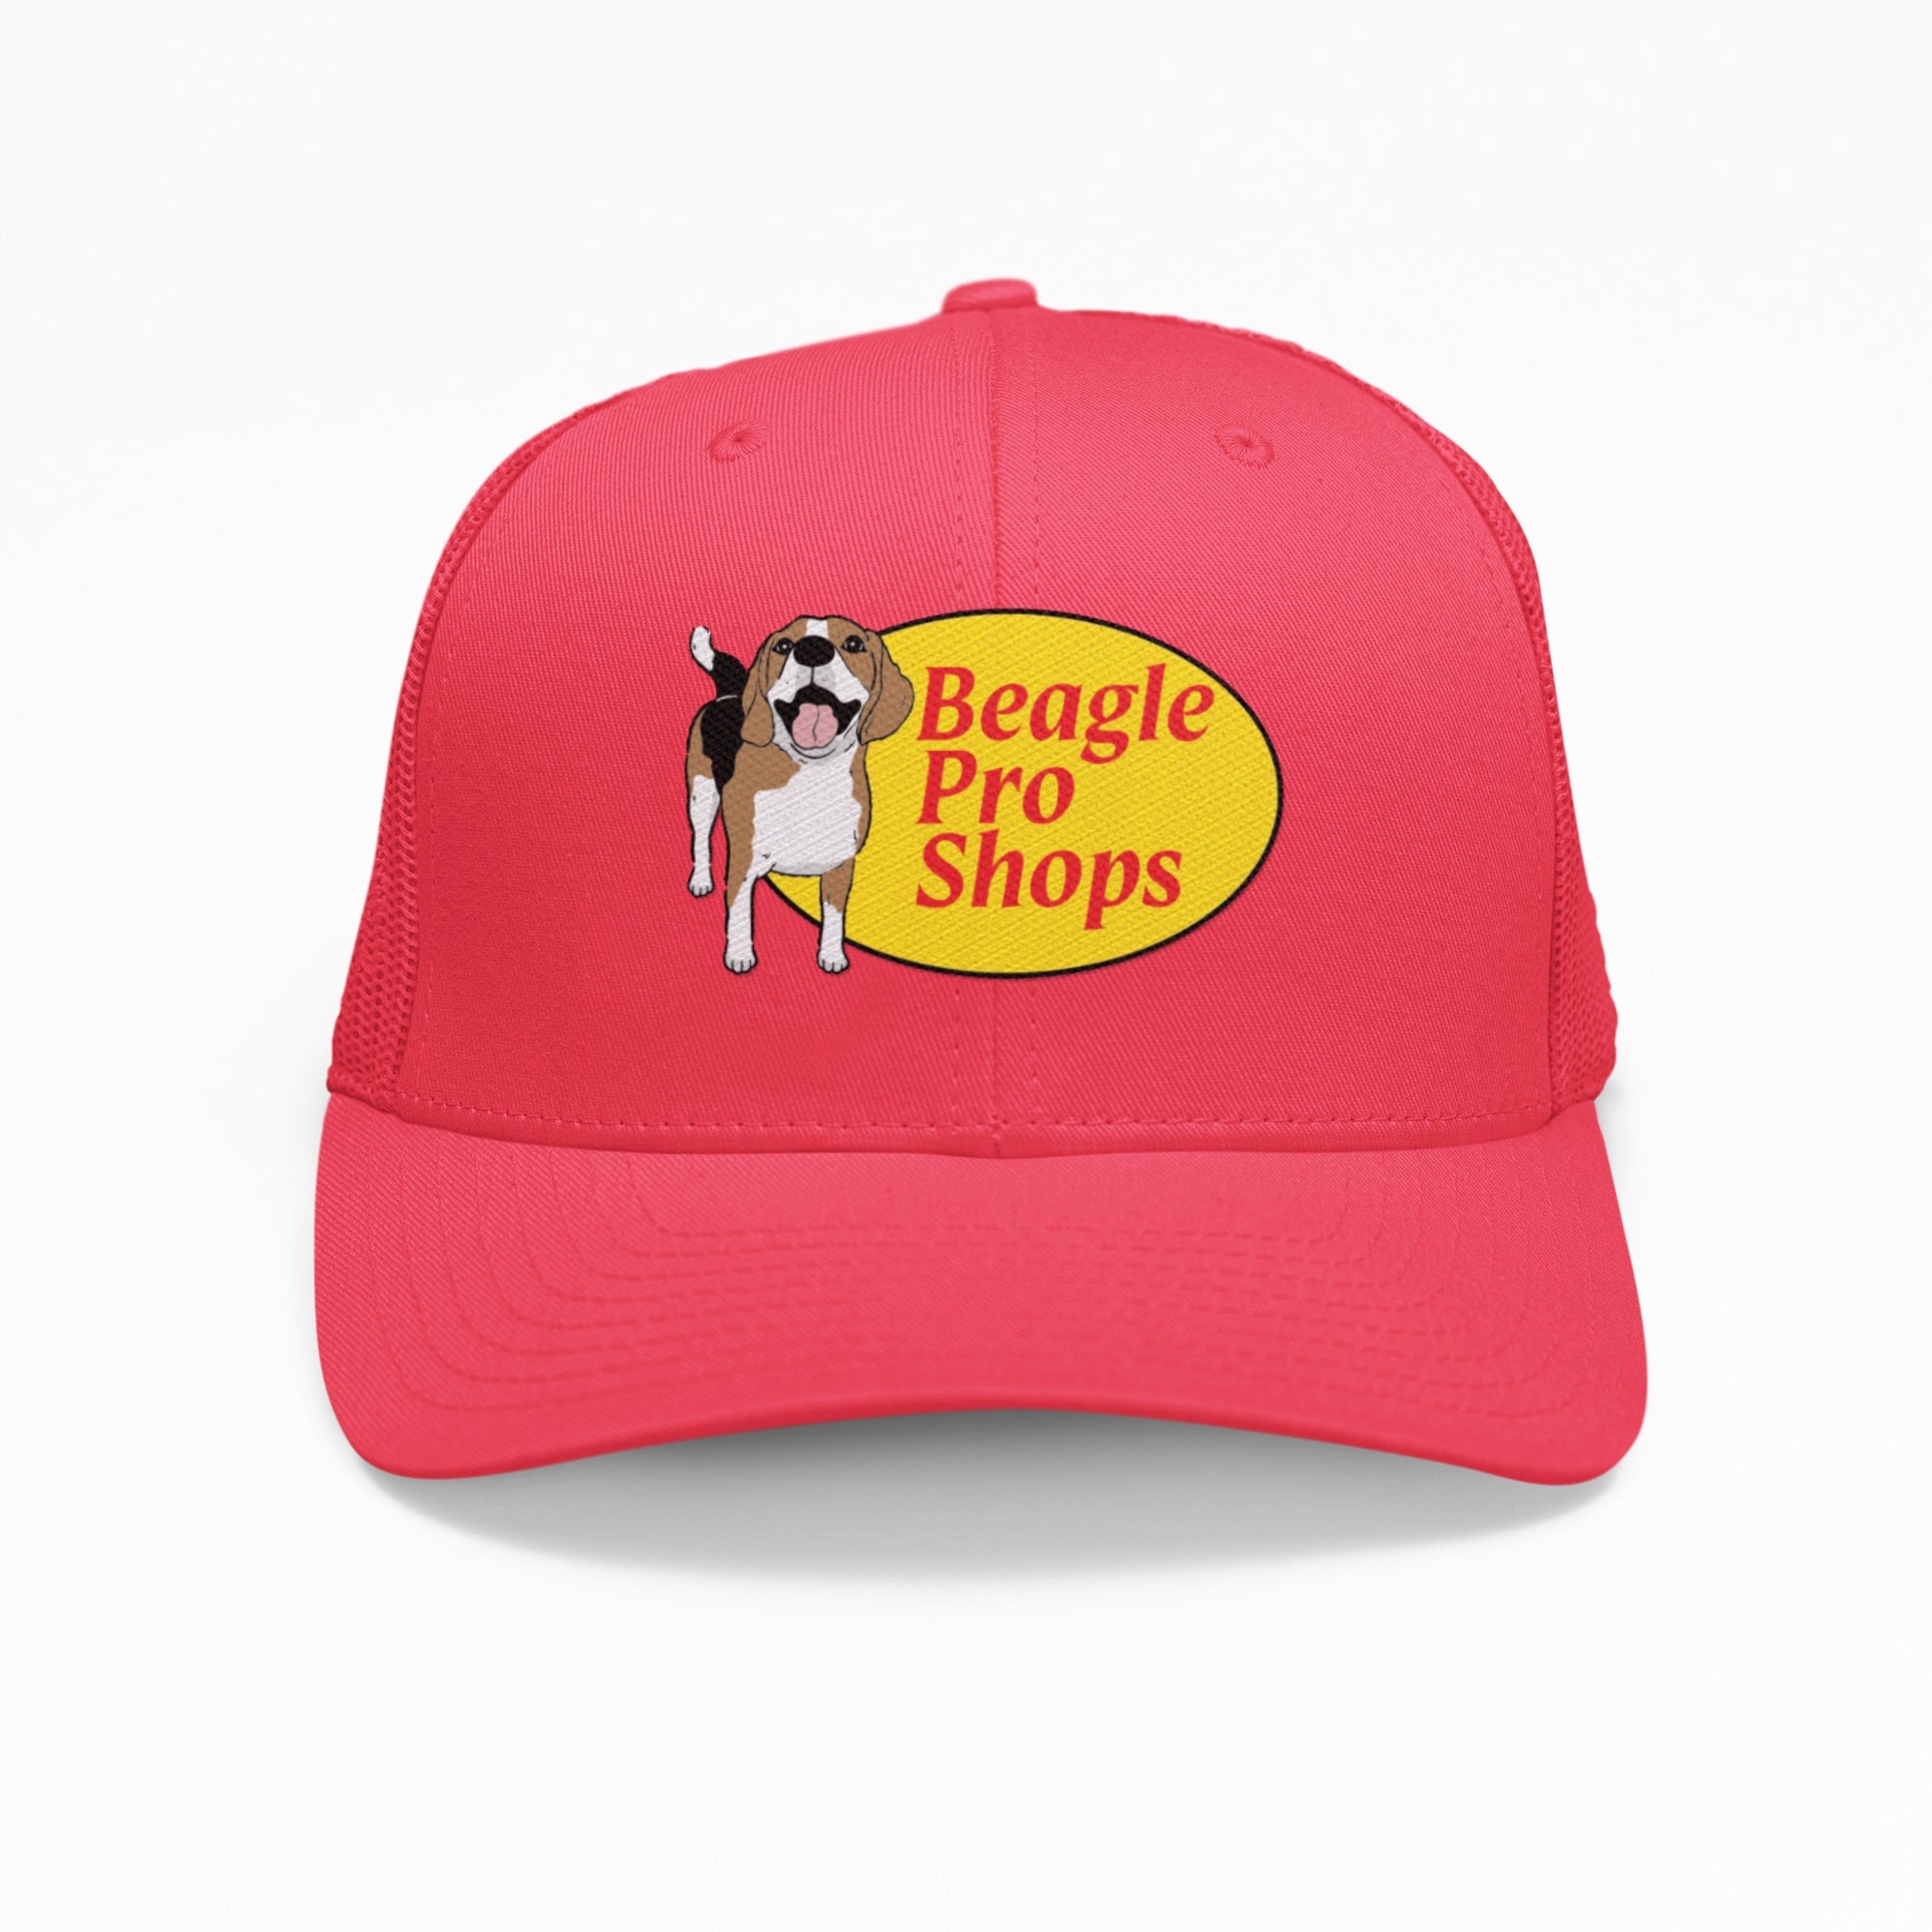 Big Rig Trucker Hat - Beagle Pro Shops